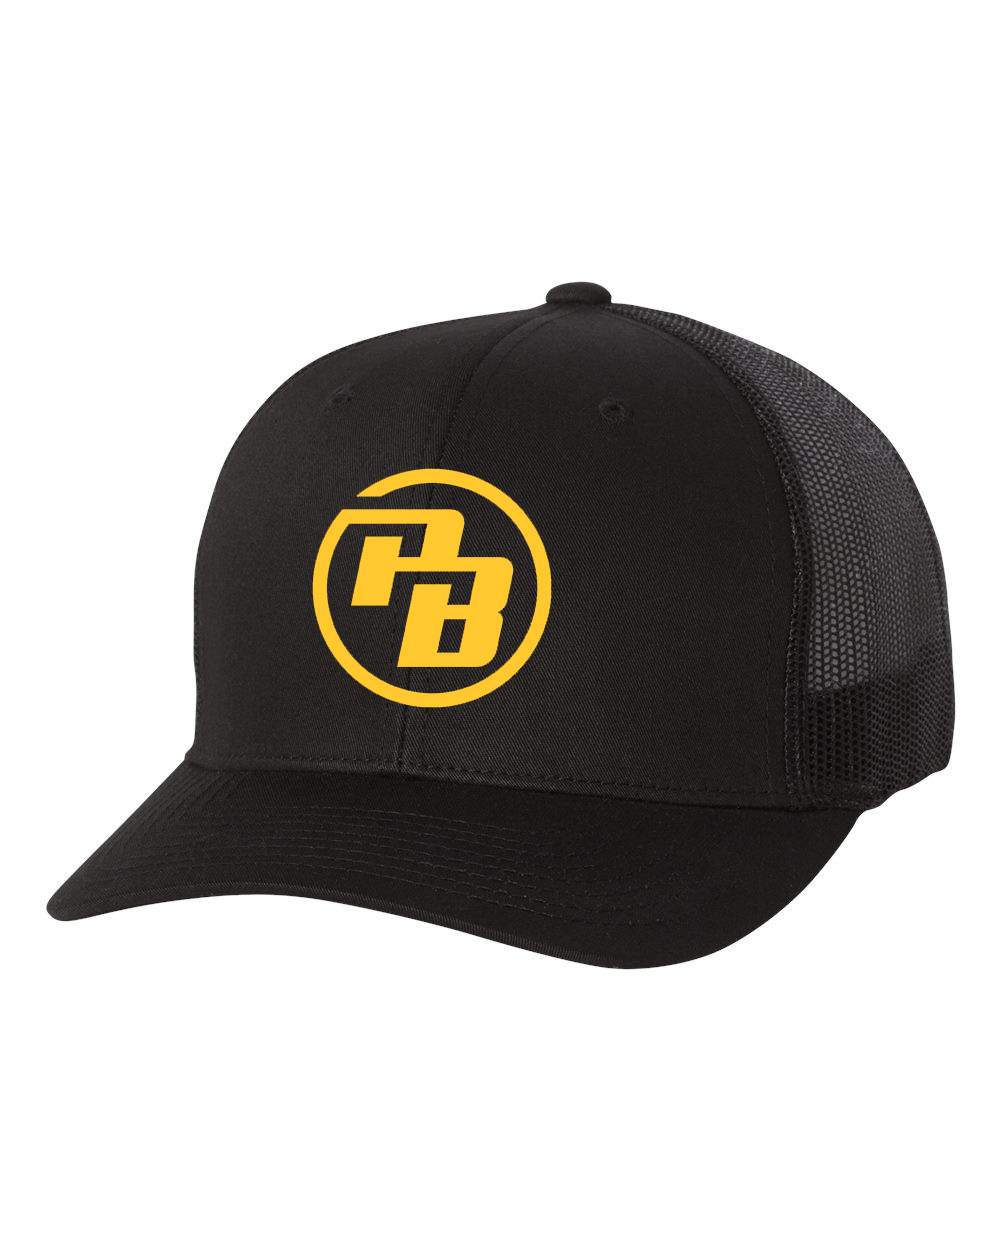 Premier Baseball Black Trucker Cap